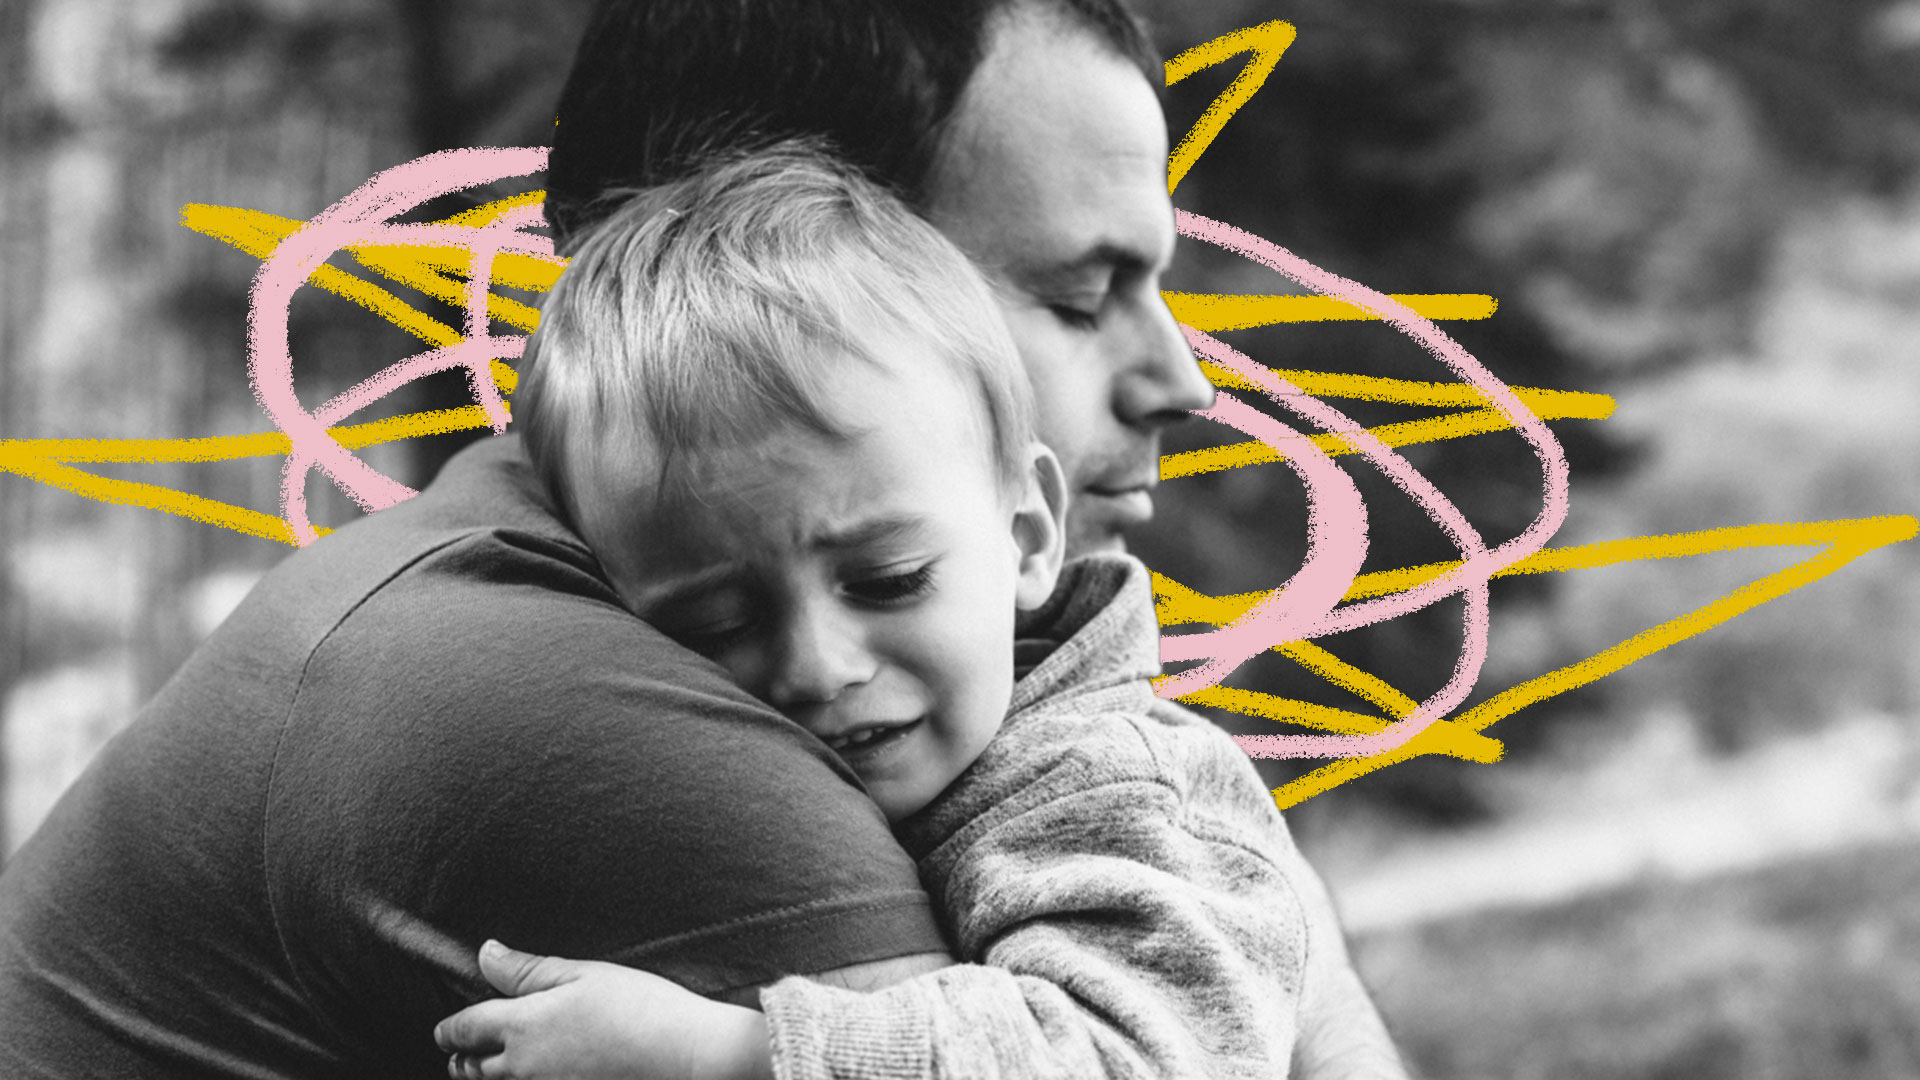 Medo: foto de homem adulto que abraça uma criança chorando em foto preto e branca com grafismos amarelos e cor-de-rosa.